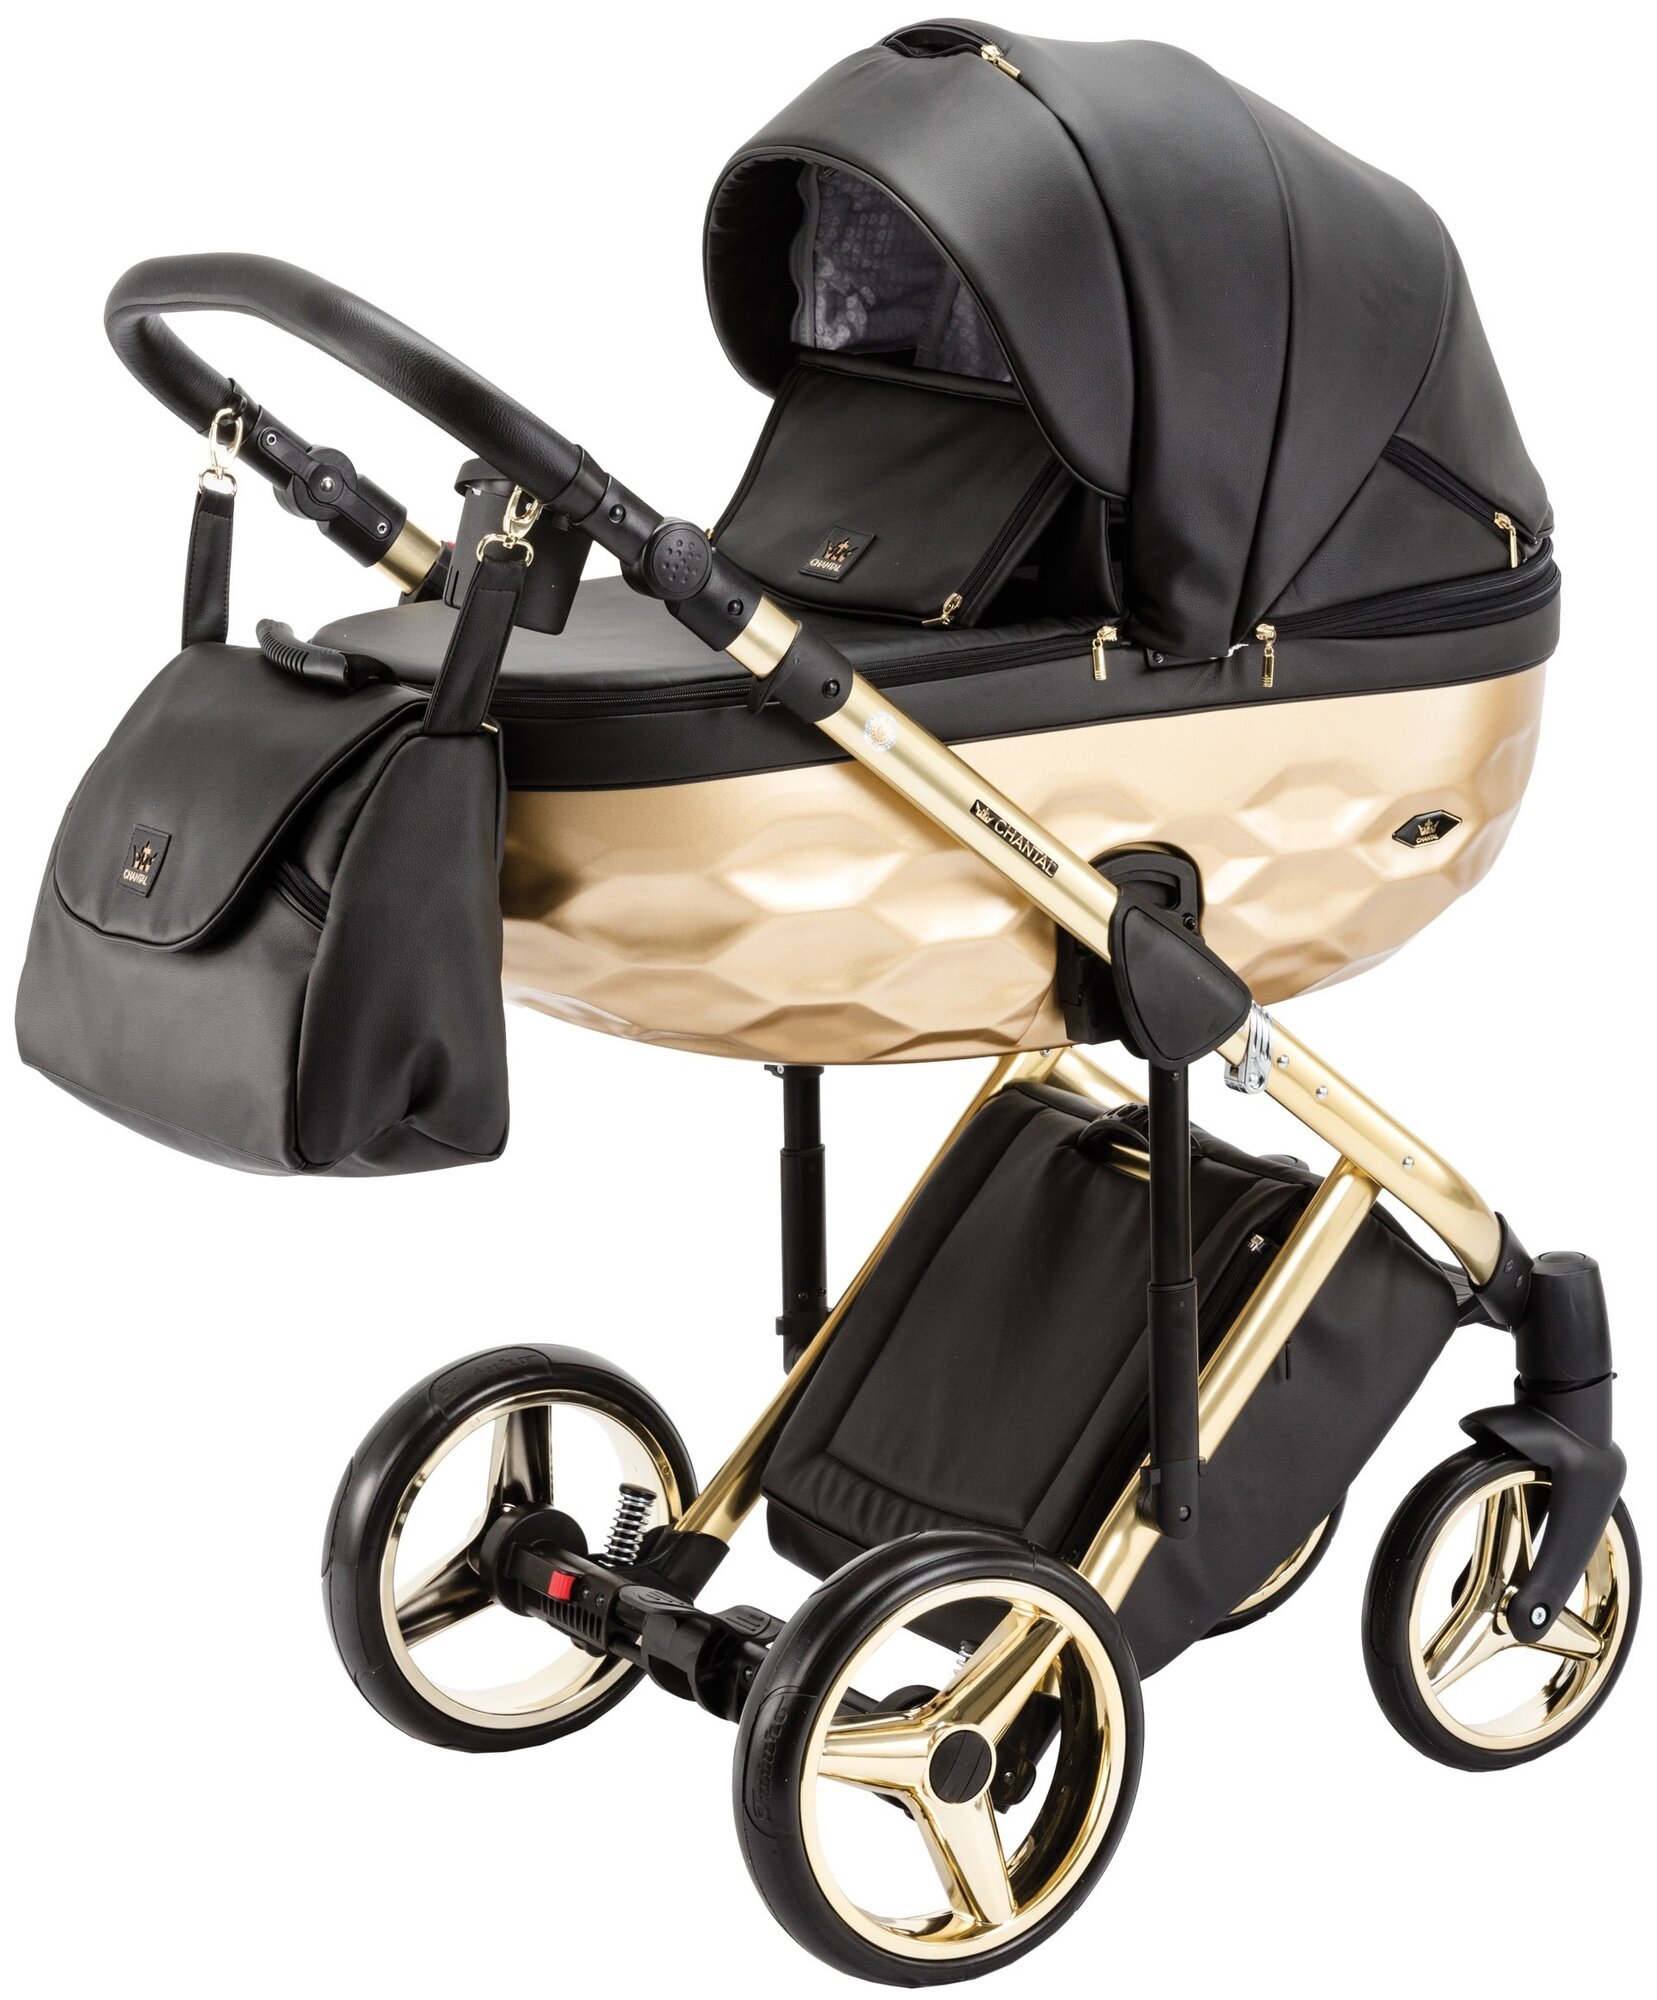 Коляска для новорожденных Adamex Chantal Star Deluxe, прогулочная универсальная детская коляска 2 в 1 черная эко-кожа с золотом